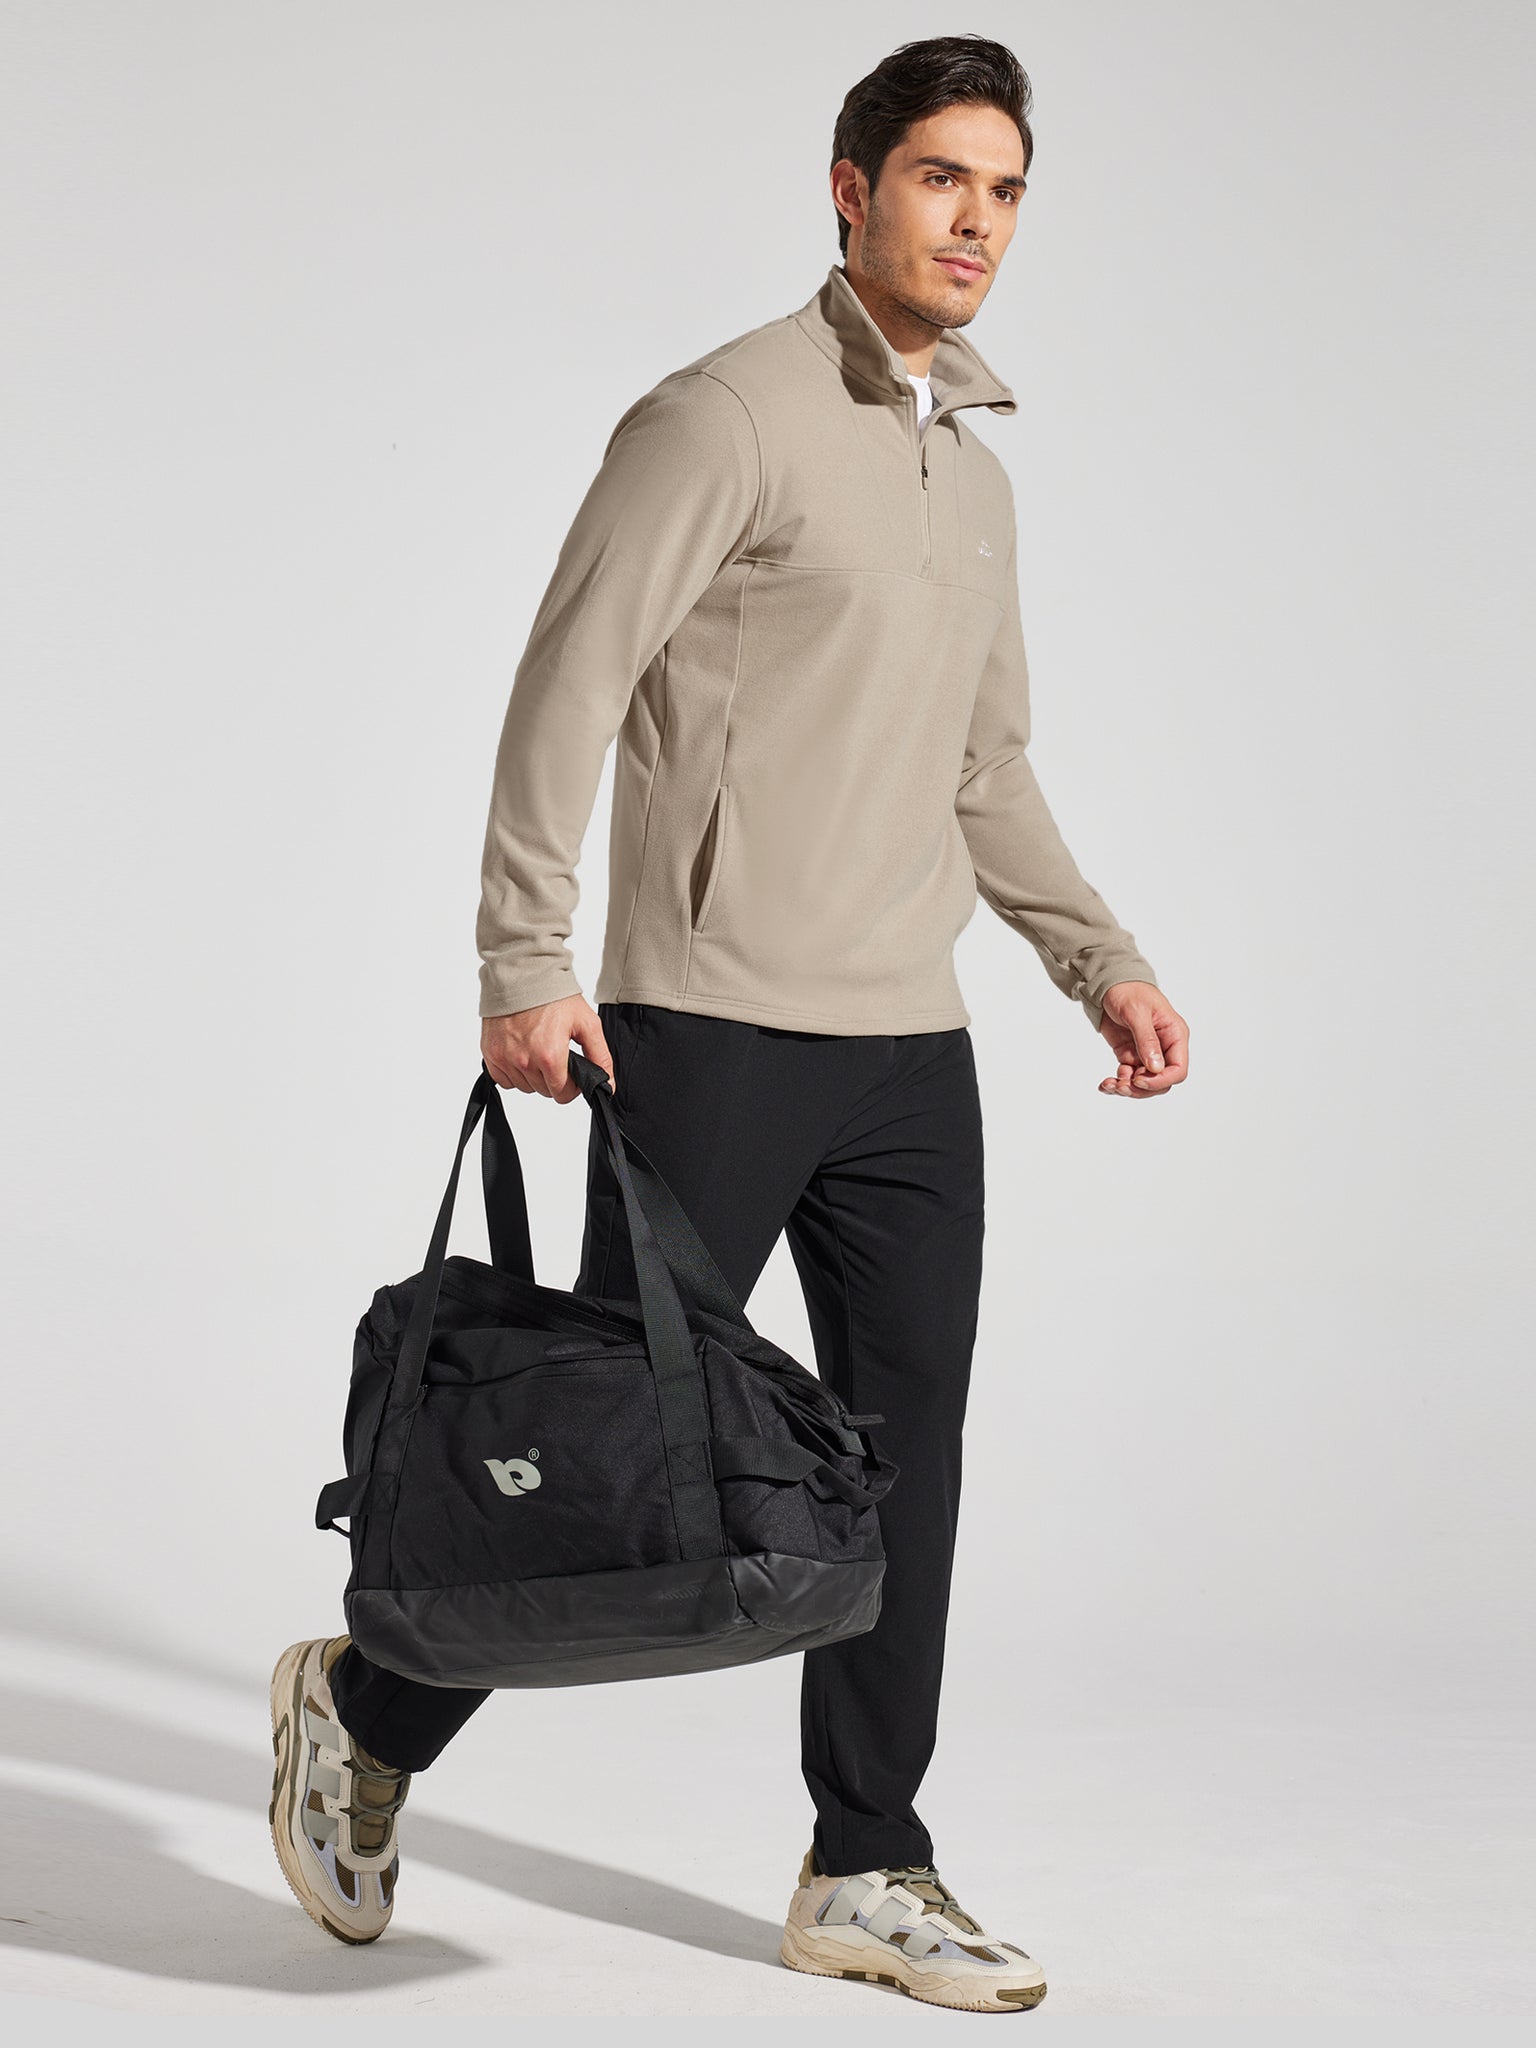 Men's Fleece Quarter Zip Pullover_MilkTea_model3